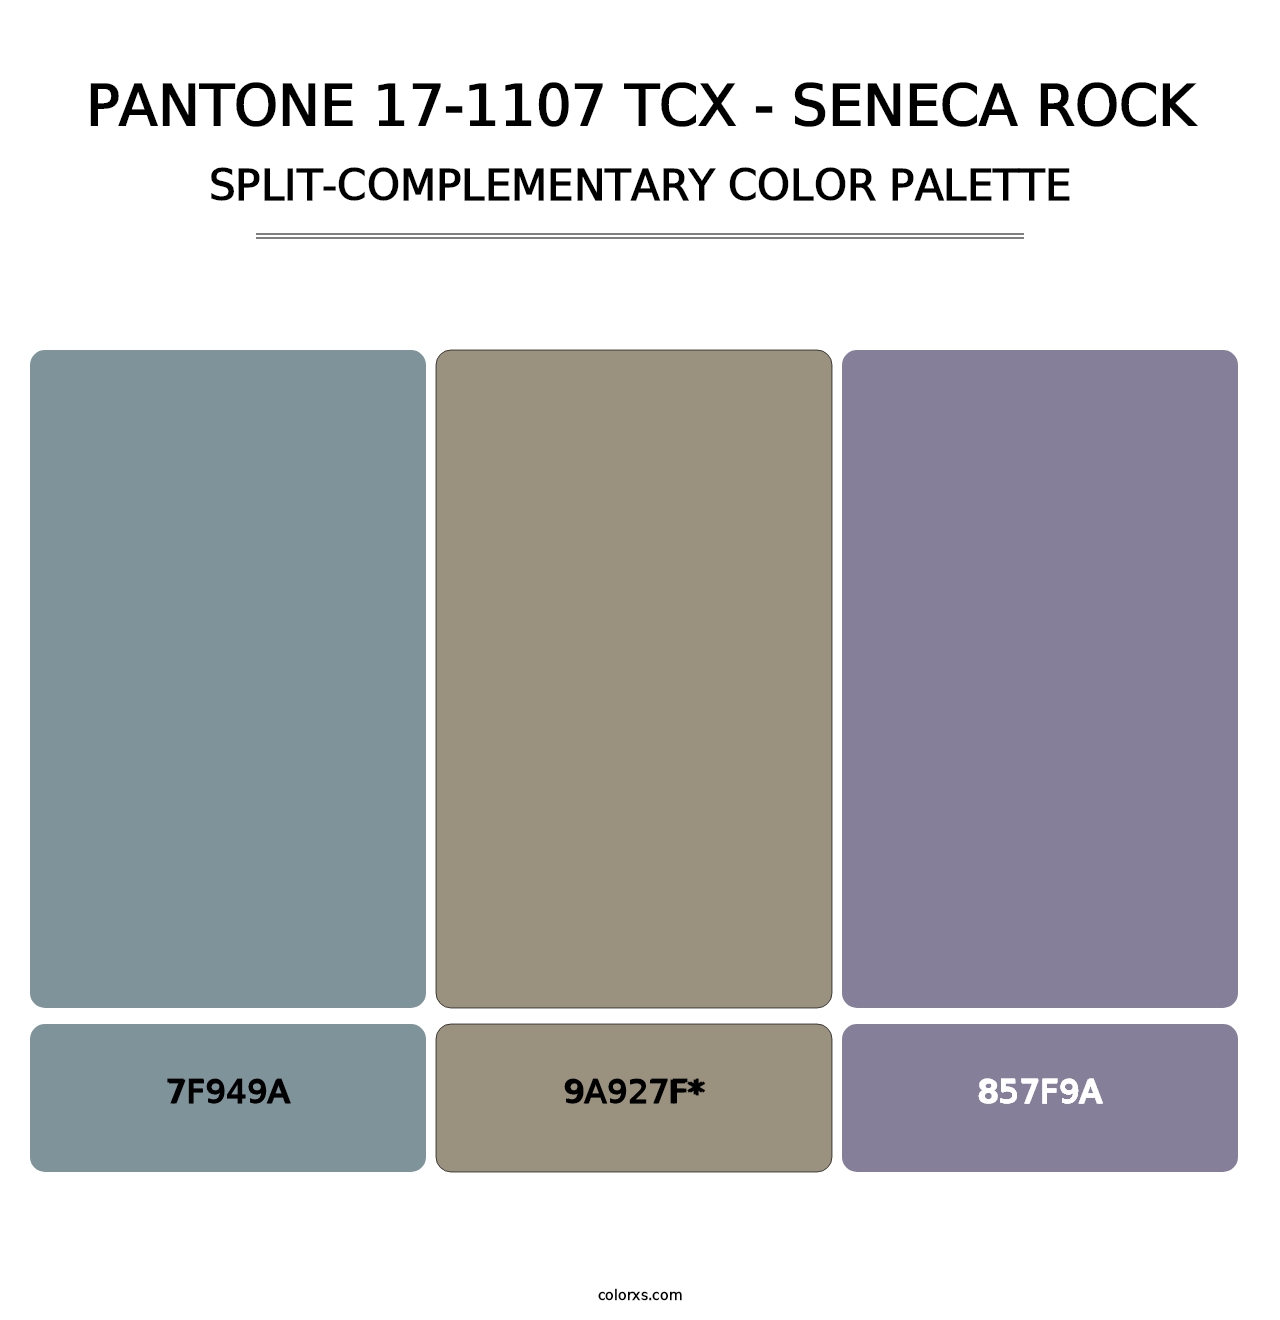 PANTONE 17-1107 TCX - Seneca Rock - Split-Complementary Color Palette